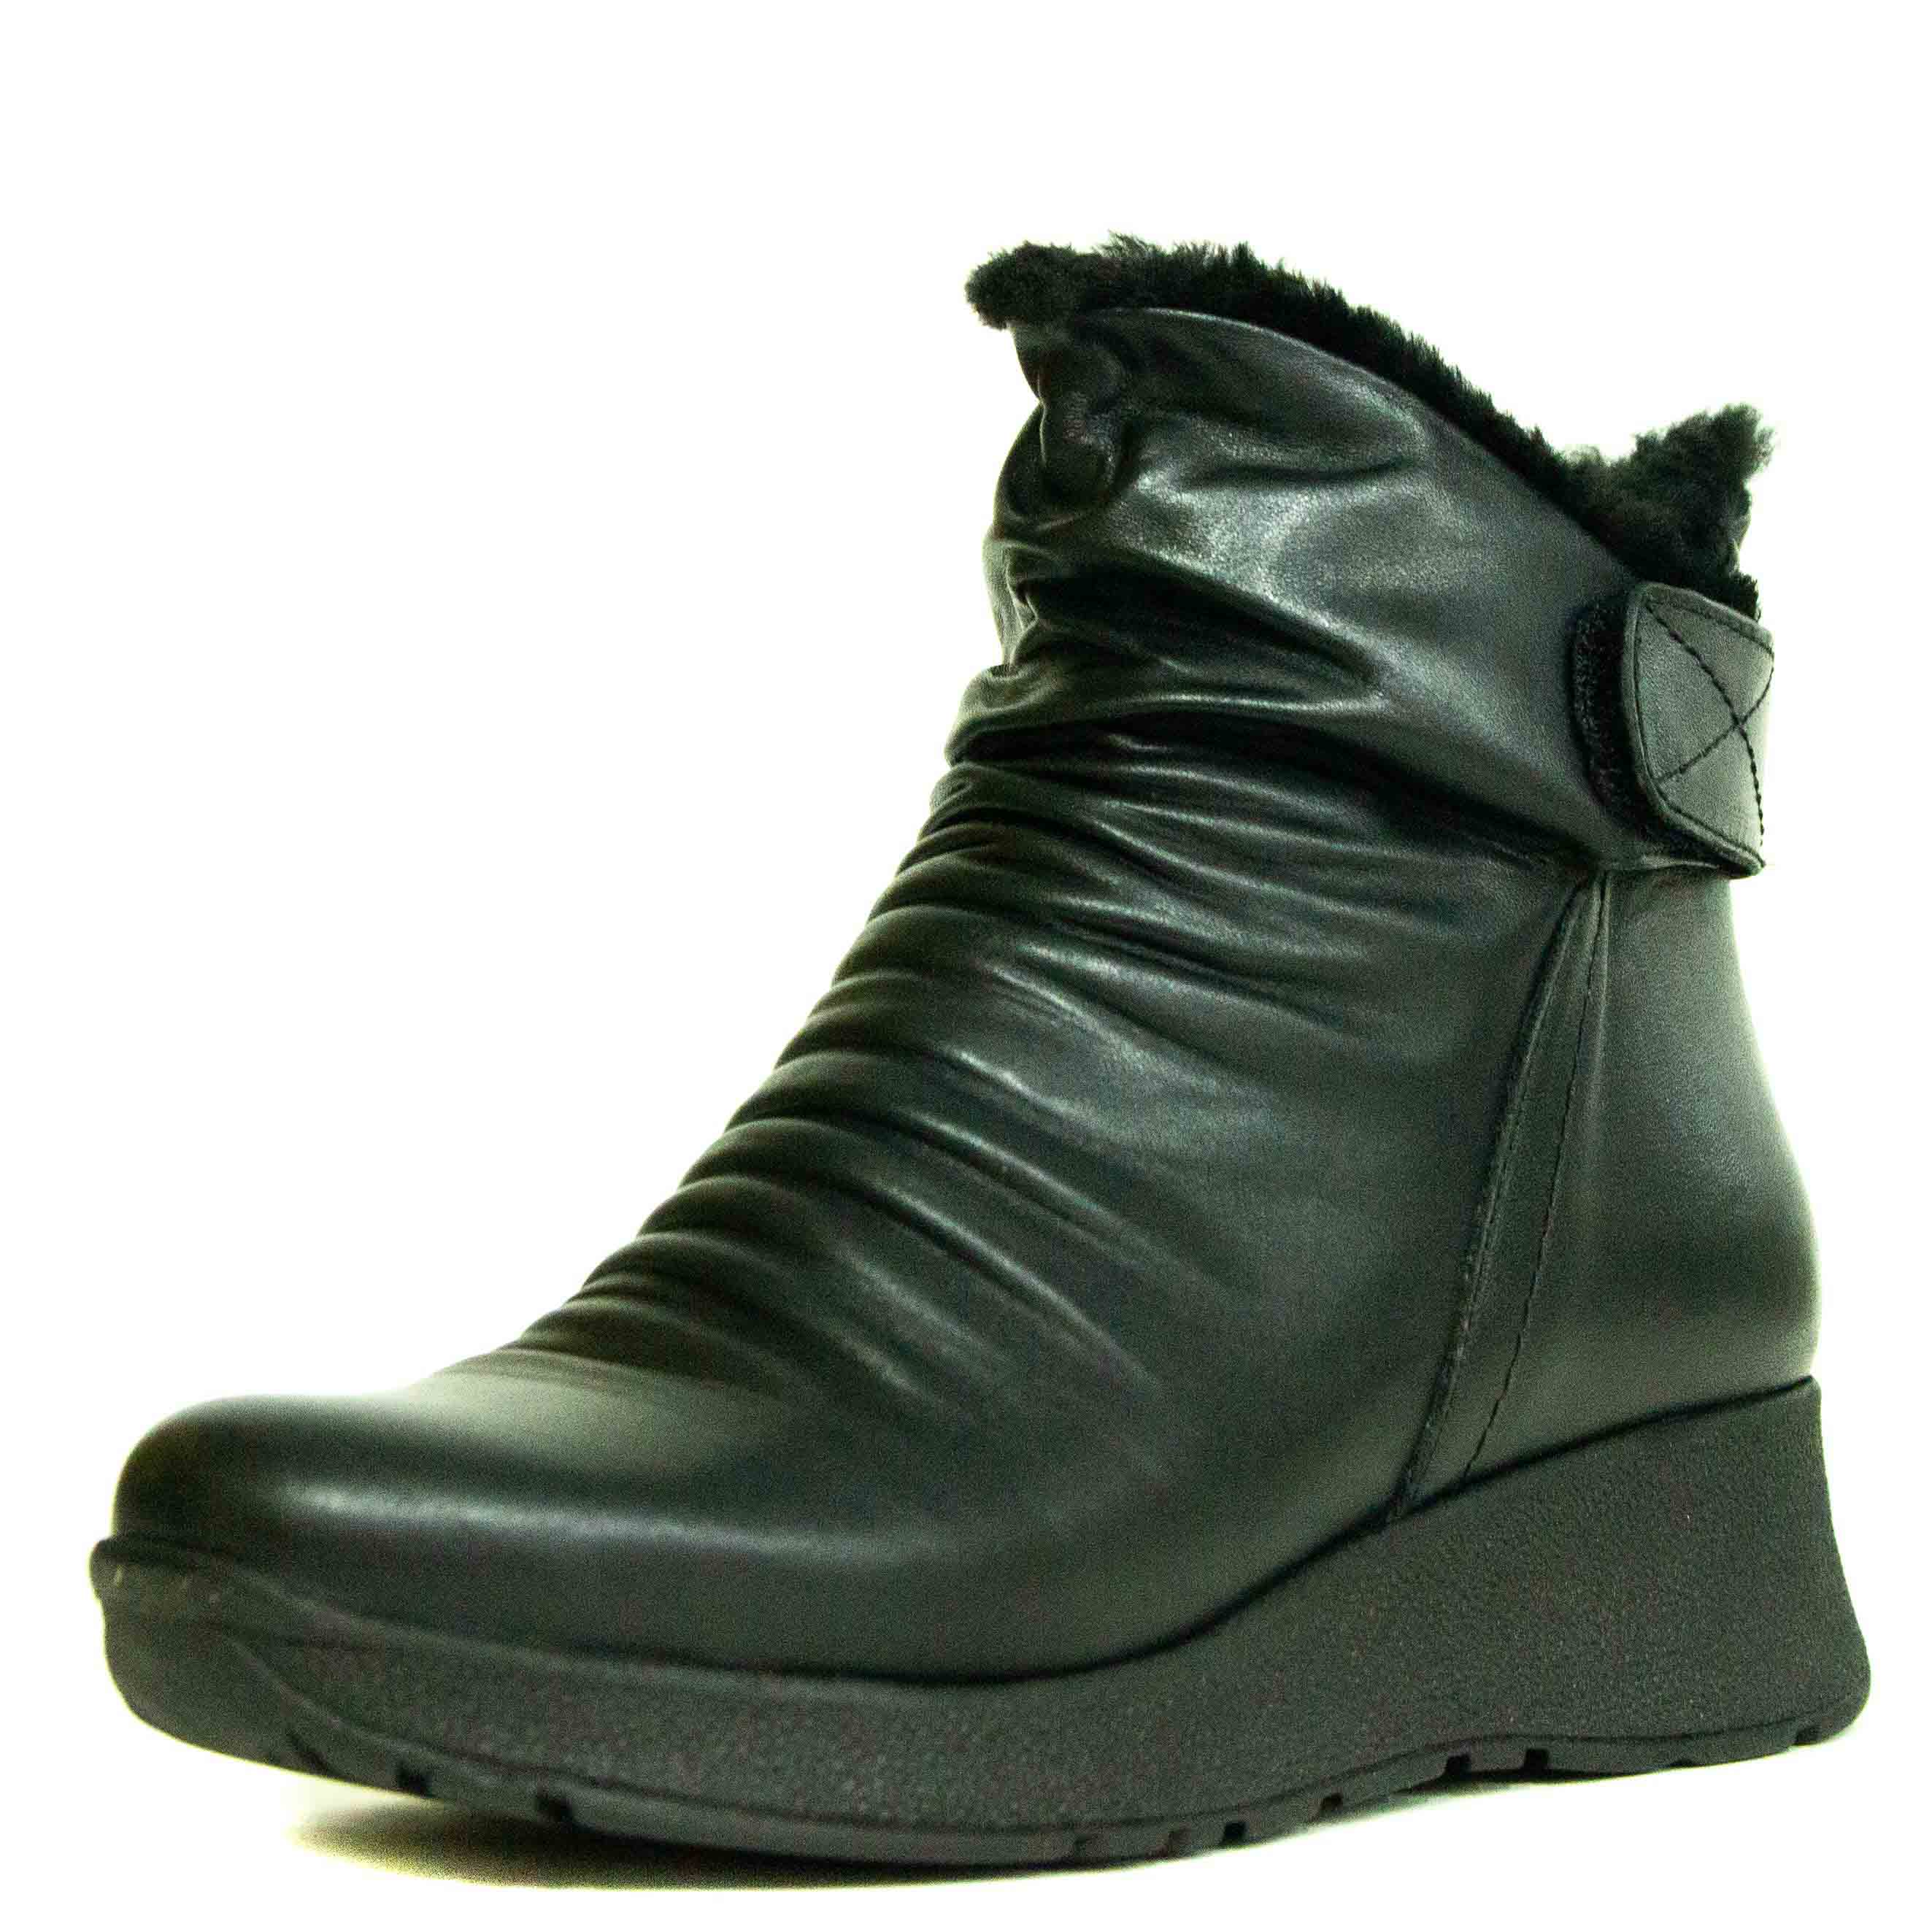 Ботинки женские Shoes Market 730-250-01 черные 37 RU